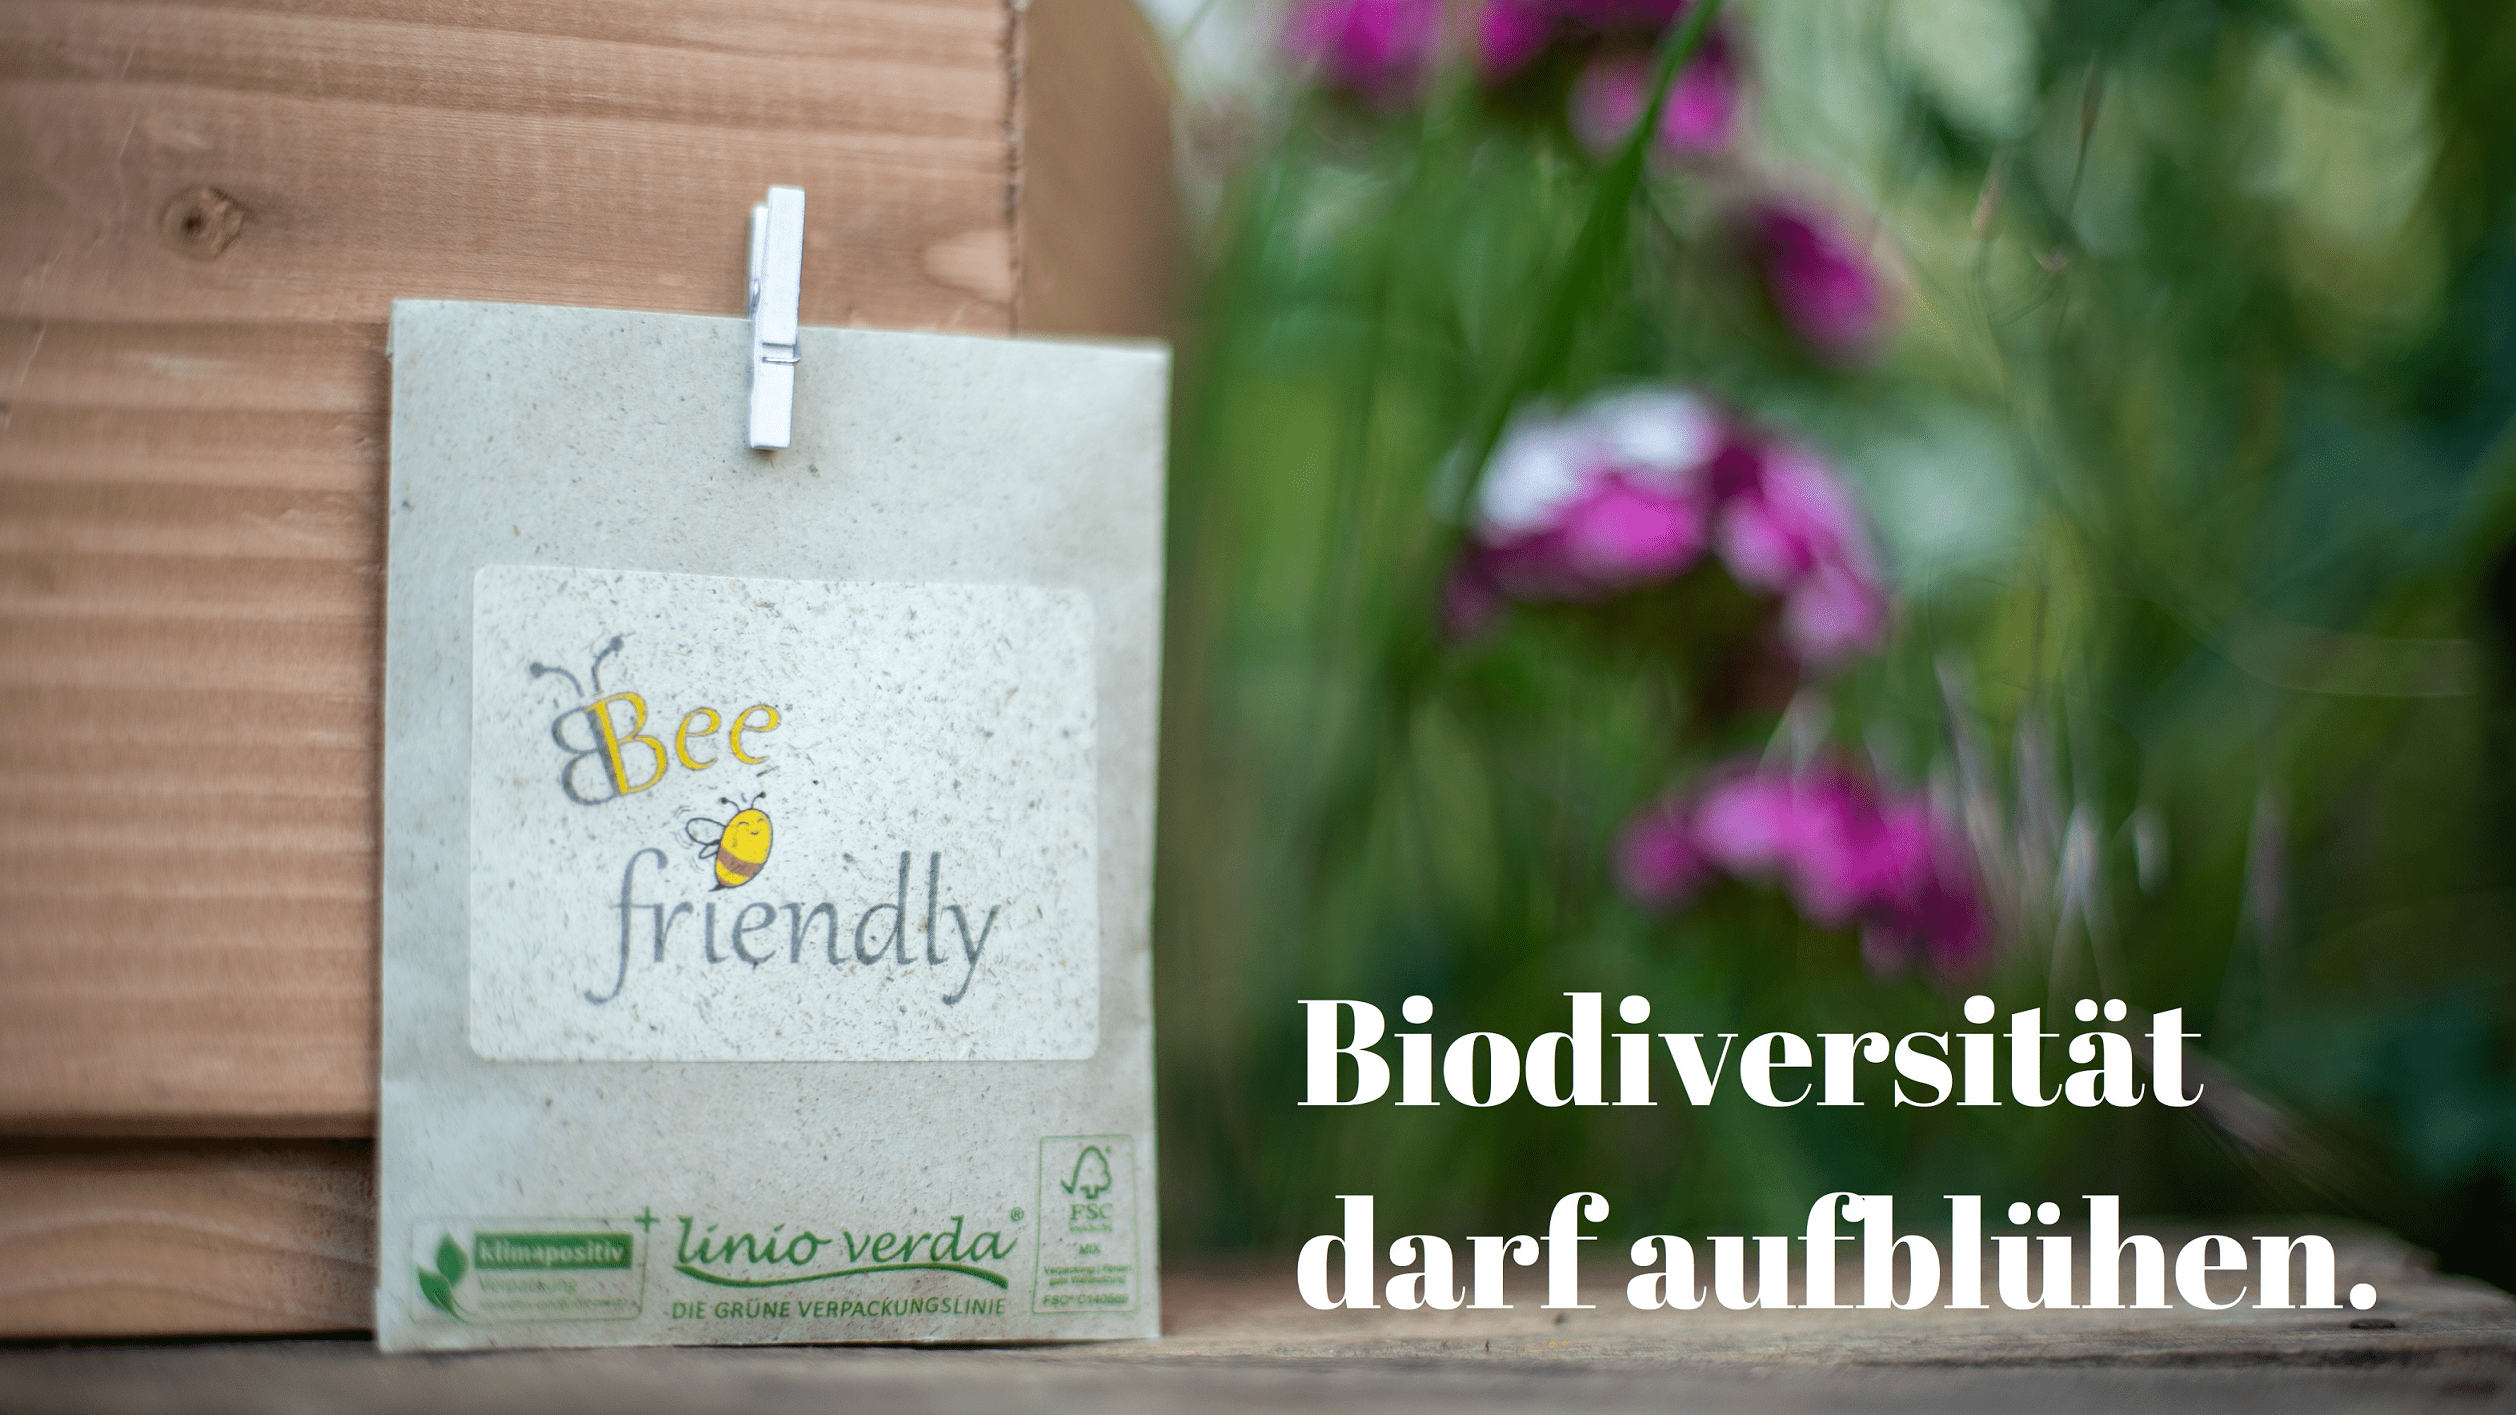 Biodiversität darf aufblühen - Bienensaat-Tüte Graspapier